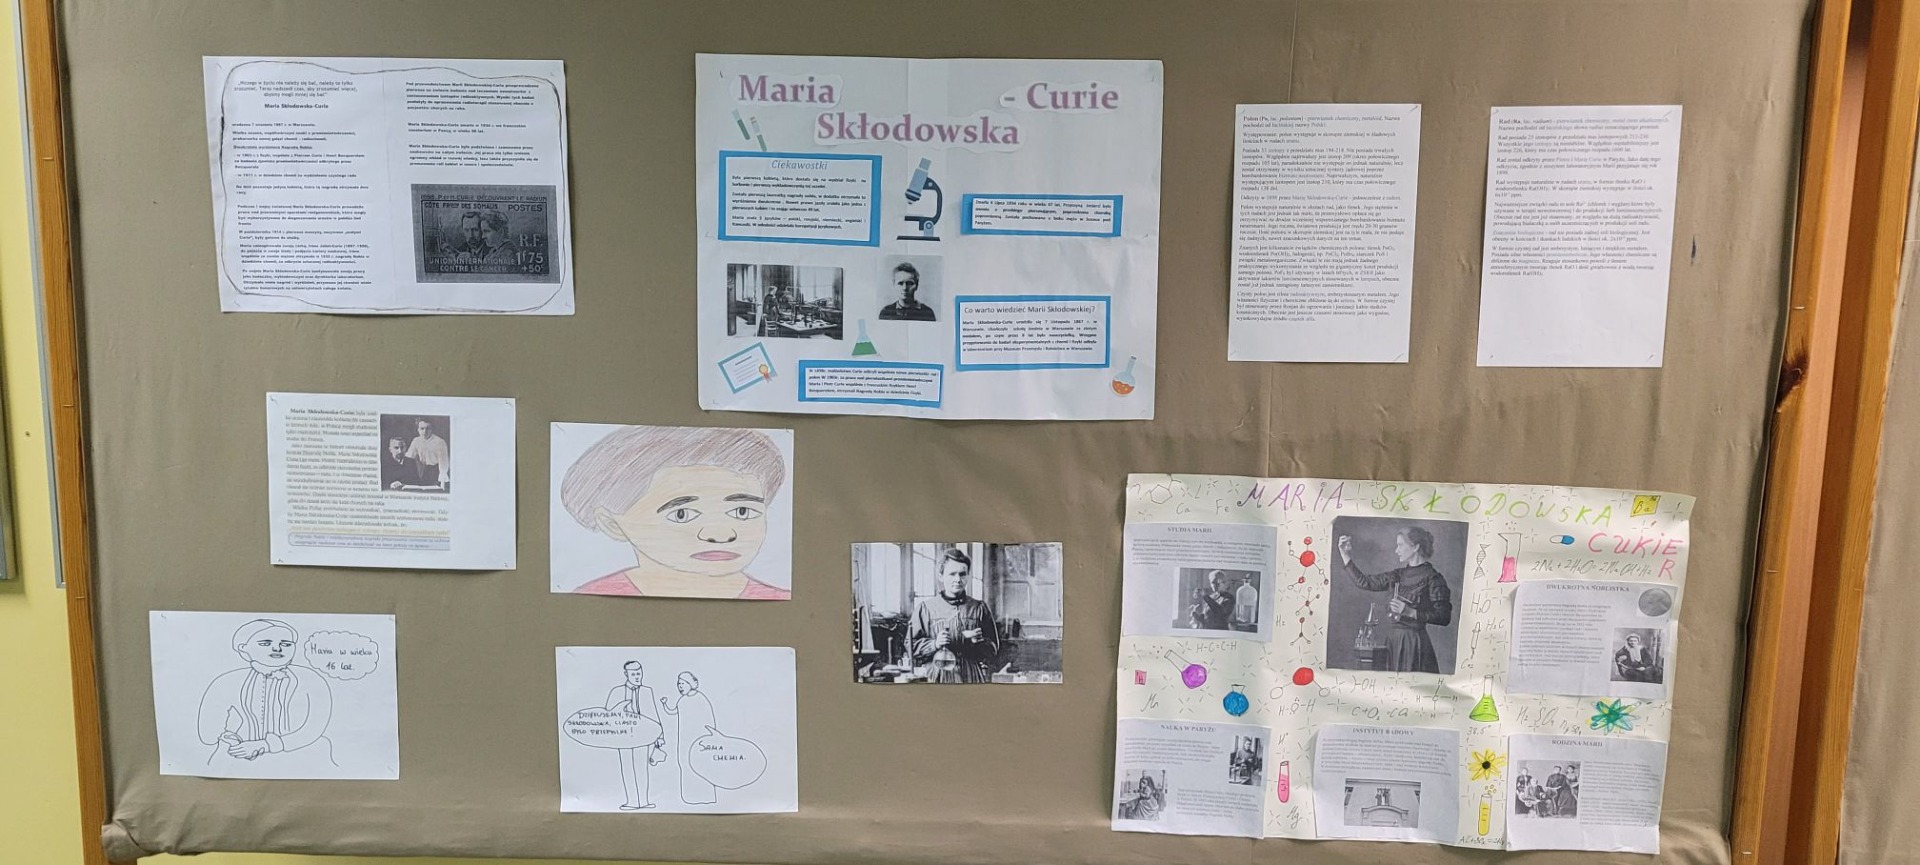 Wystawa poświęcona Marii Curie-Skłodowskiej - Obrazek 2